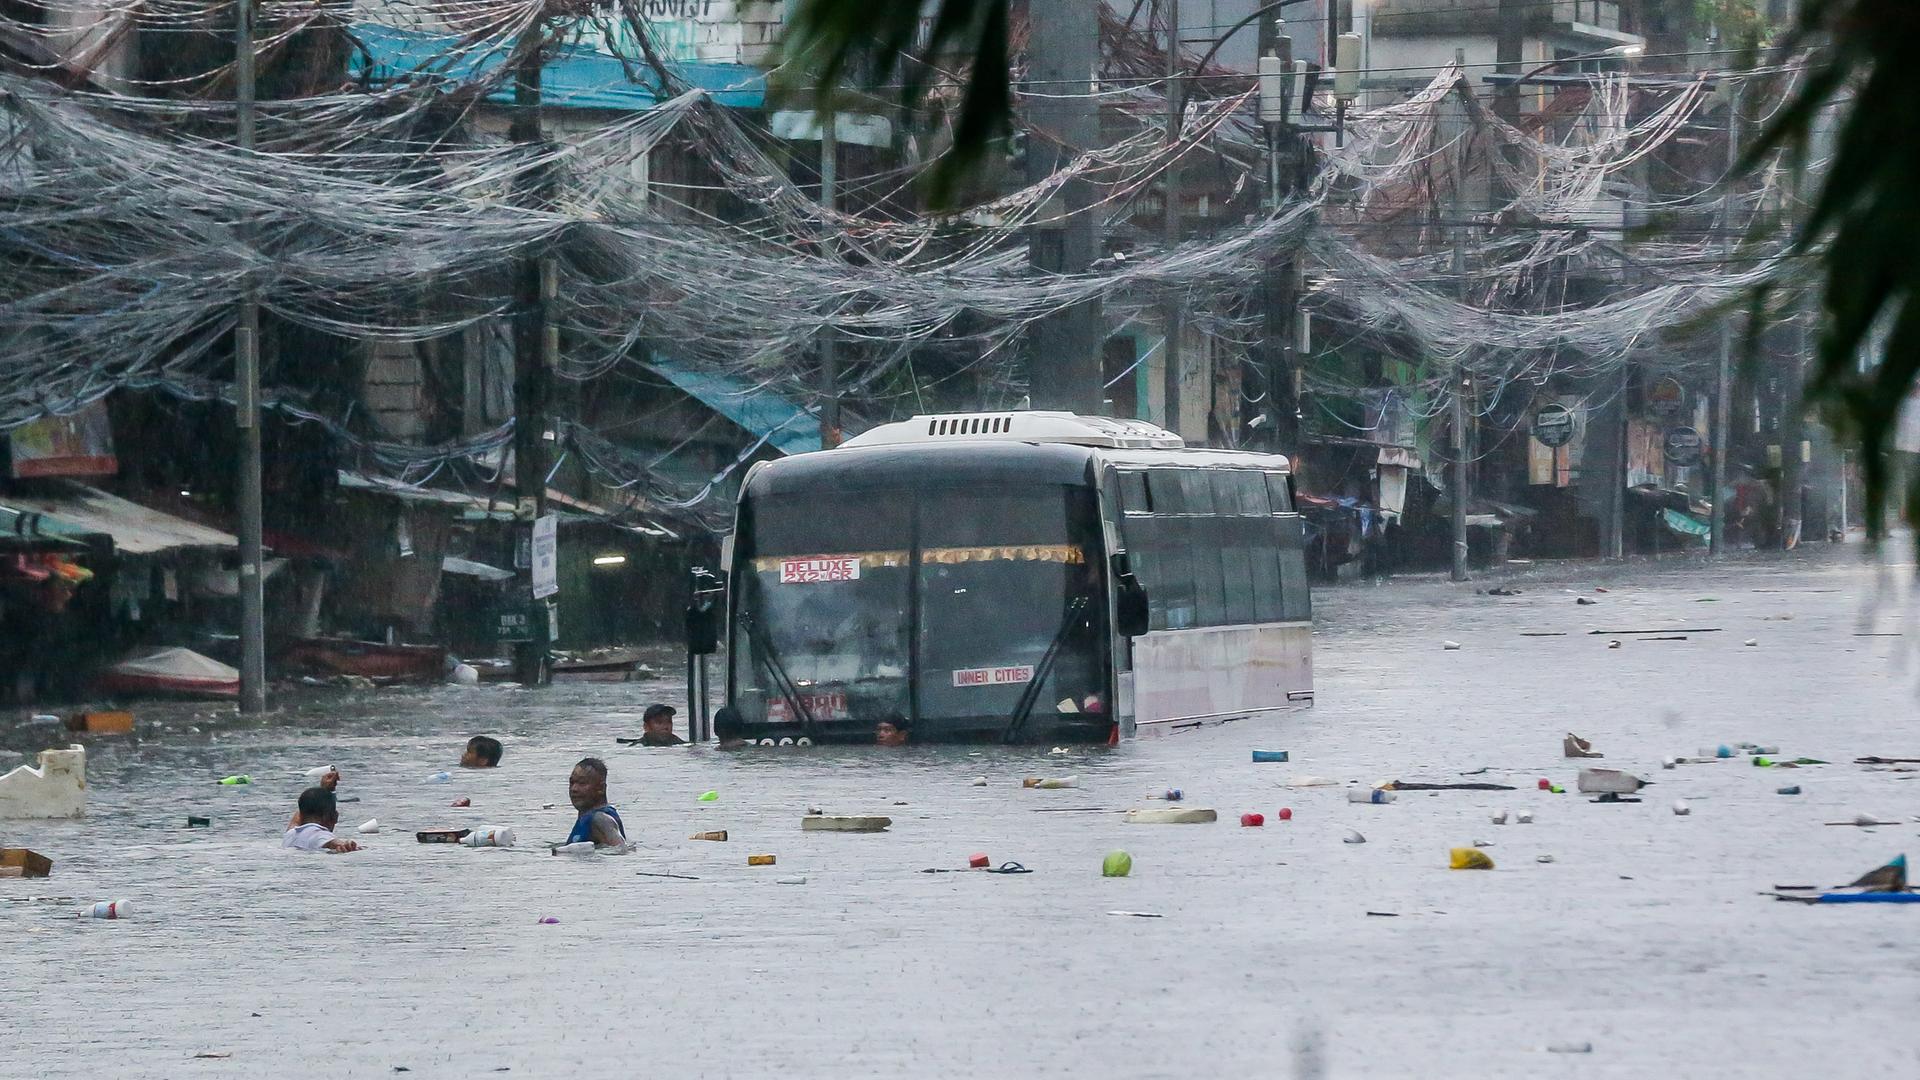 Blick aus der Ferne auf den Bus, der bis zum unteren Rand der Frontscheibe in einer Straße mit Häusern im Wasser steht. Mehrere Menschen stehen bis zum Kopf in den Fluten, Müll schwimmt darauf. 